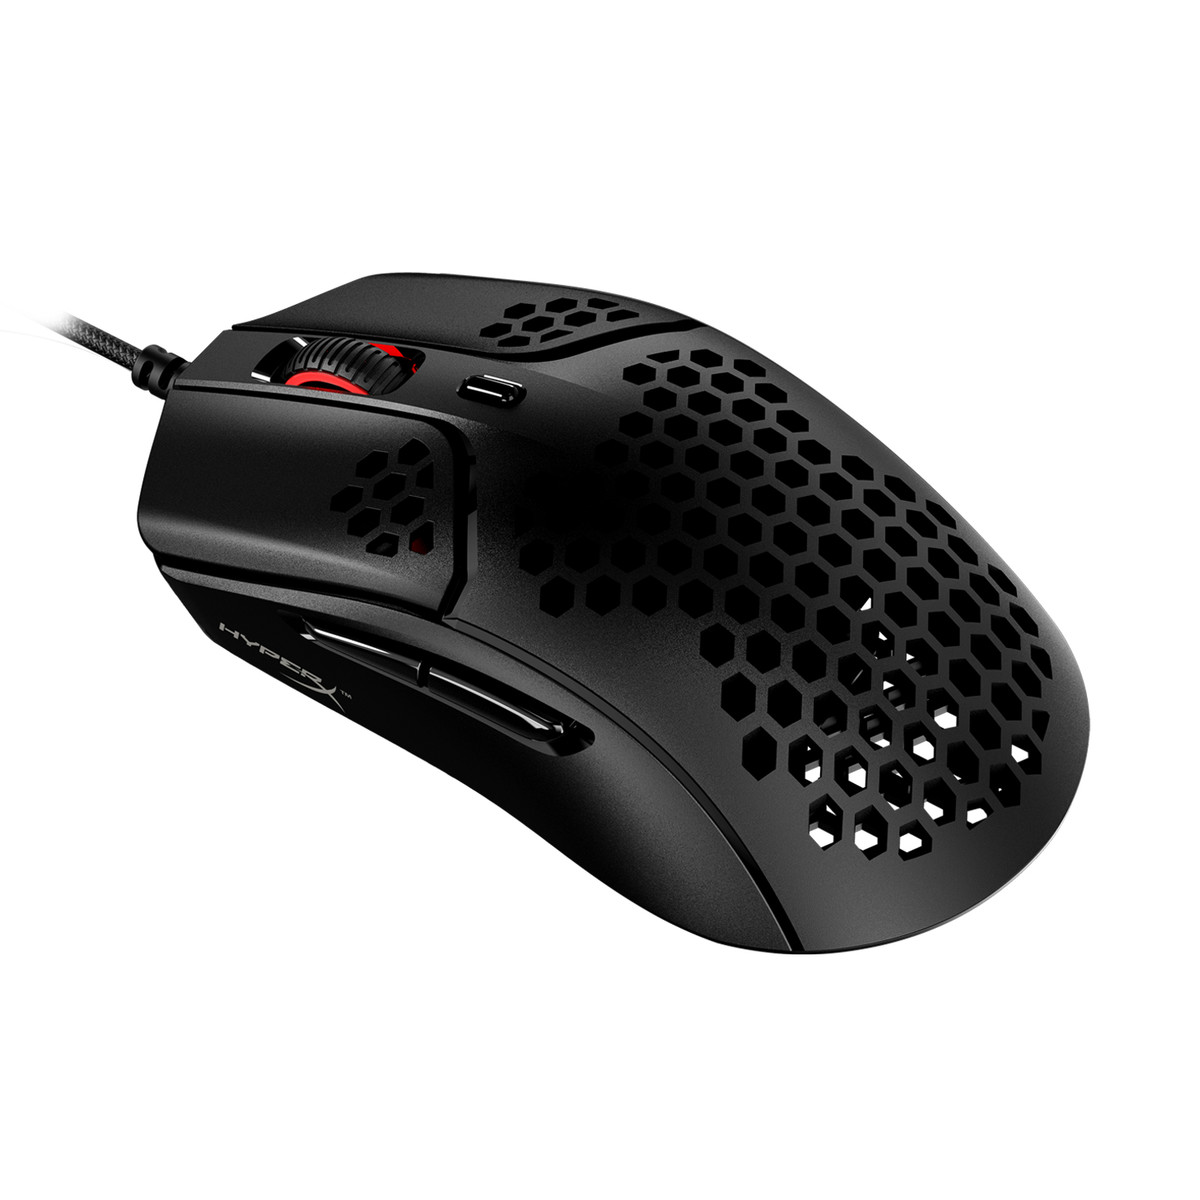 Mouse con diseño de panal, ideal para los jugadores de FPS